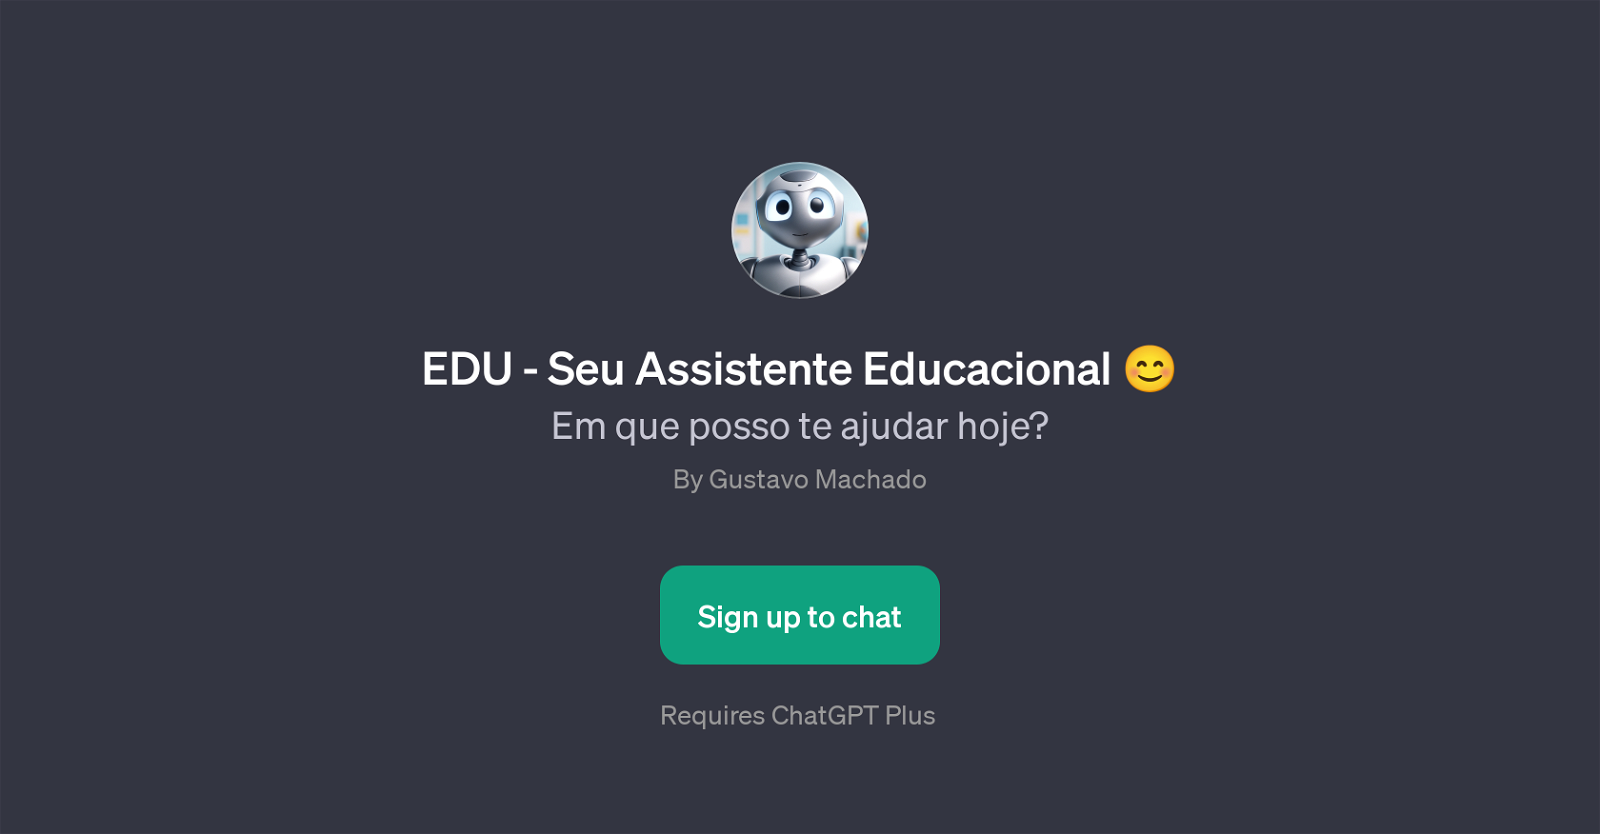 EDU - Seu Assistente Educacional website